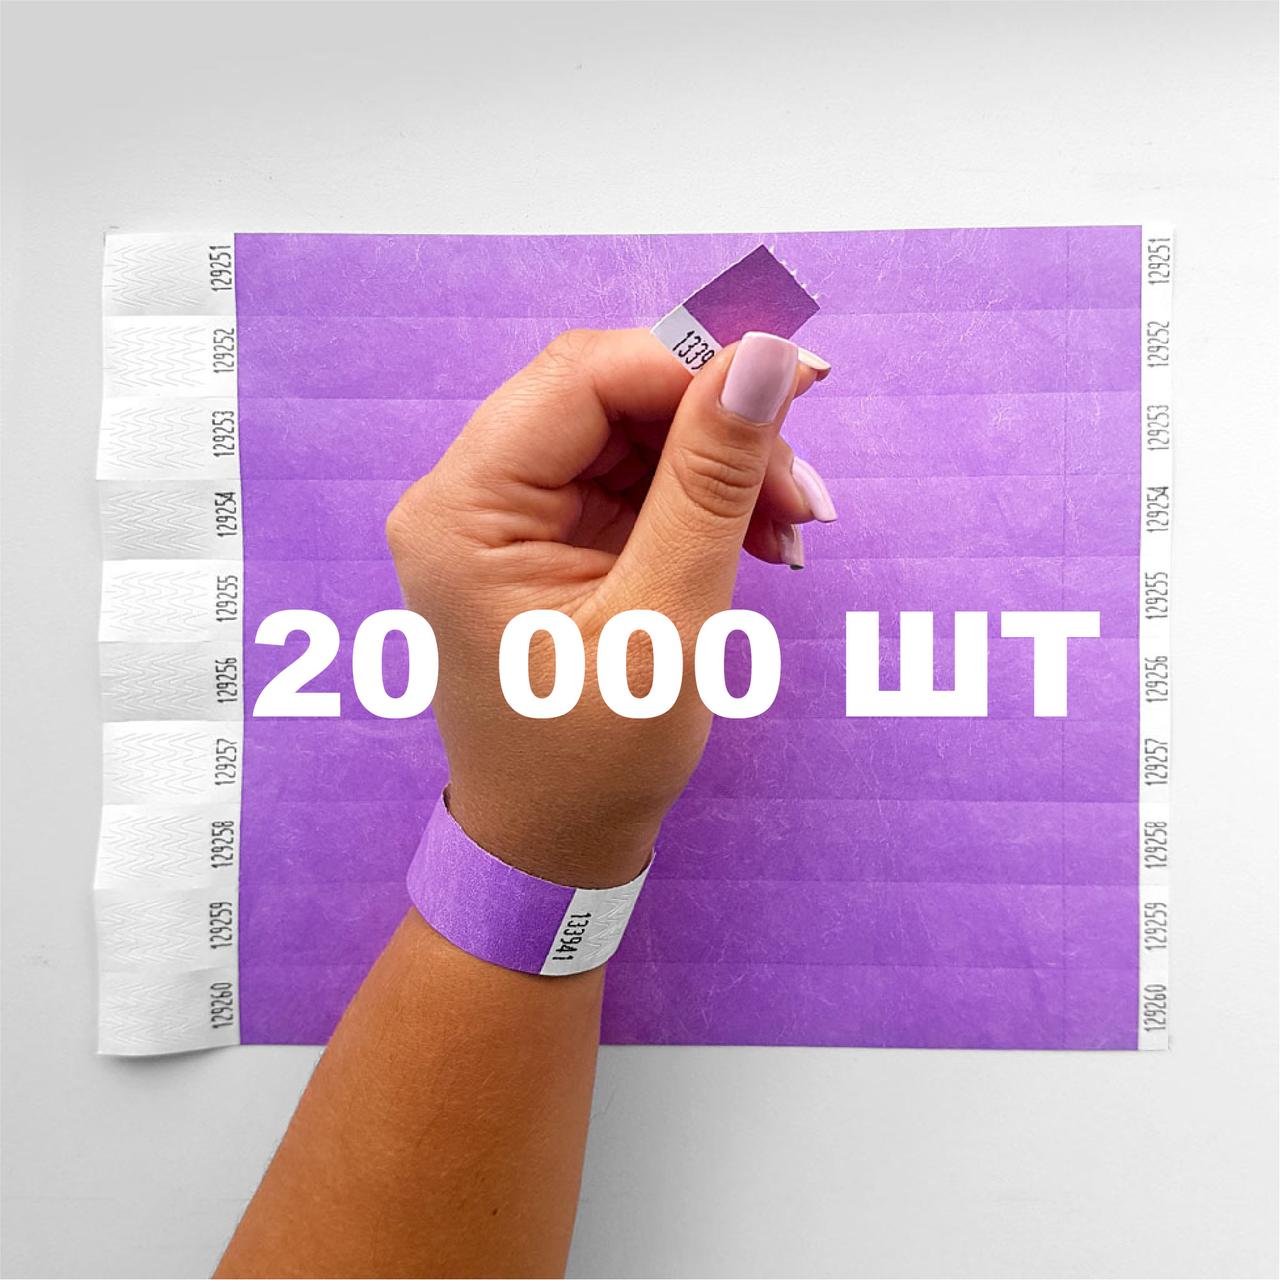 Паперовий браслет на руку для контролю відвідувачів кольоровий контрольний браслет Світло-фіолетовий - 20000 шт, фото 1